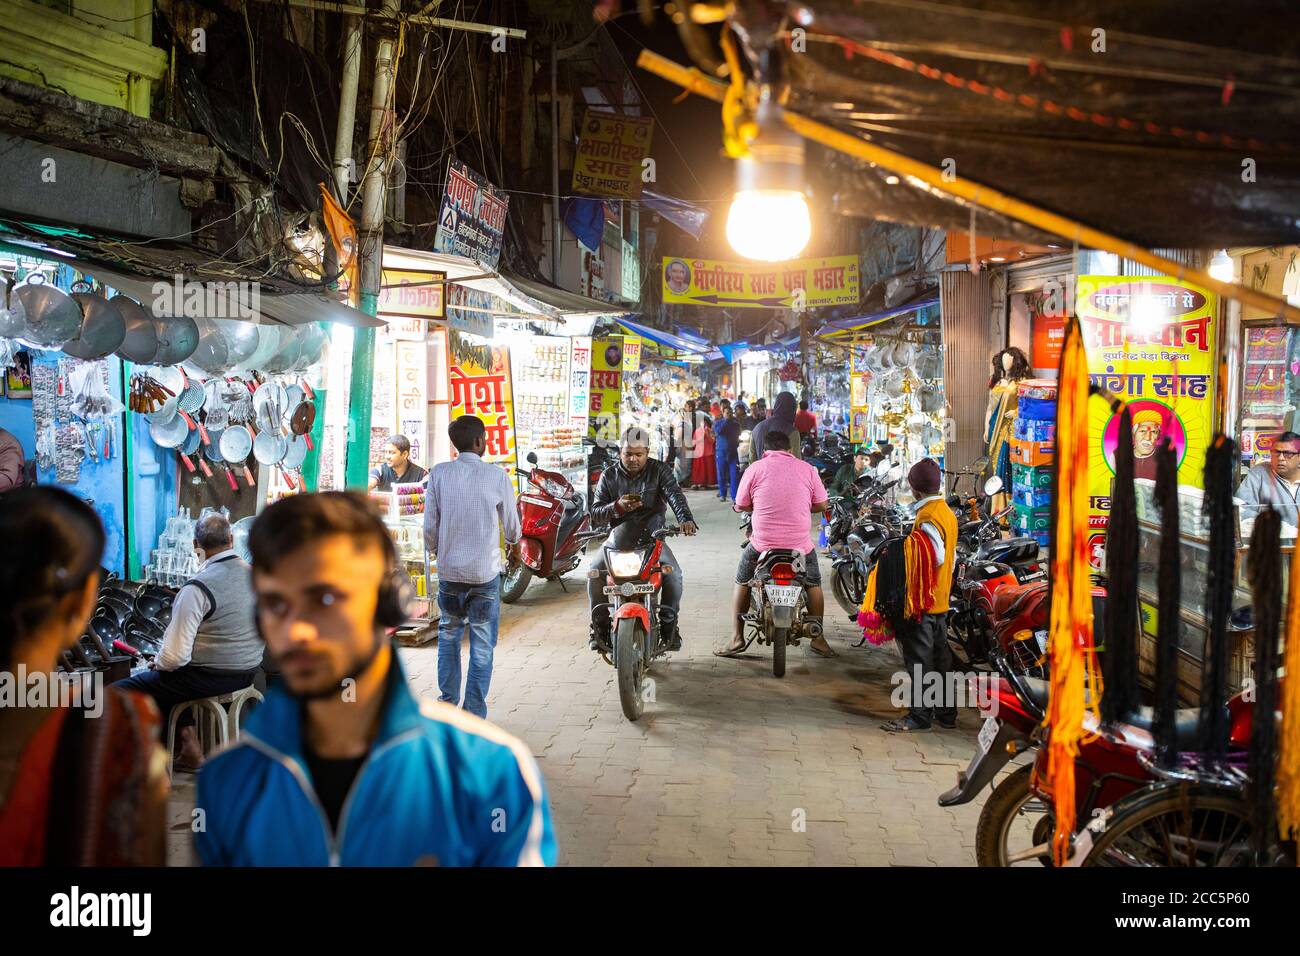 Fußgänger Shop in einem belebten Straßenmarkt in Deoghar, Indien. 19. November 2019 - Stadt Deoghar, Jharkhand Staat, Indien. Foto von Jake Lyell für Lutheran World Relief. Stockfoto